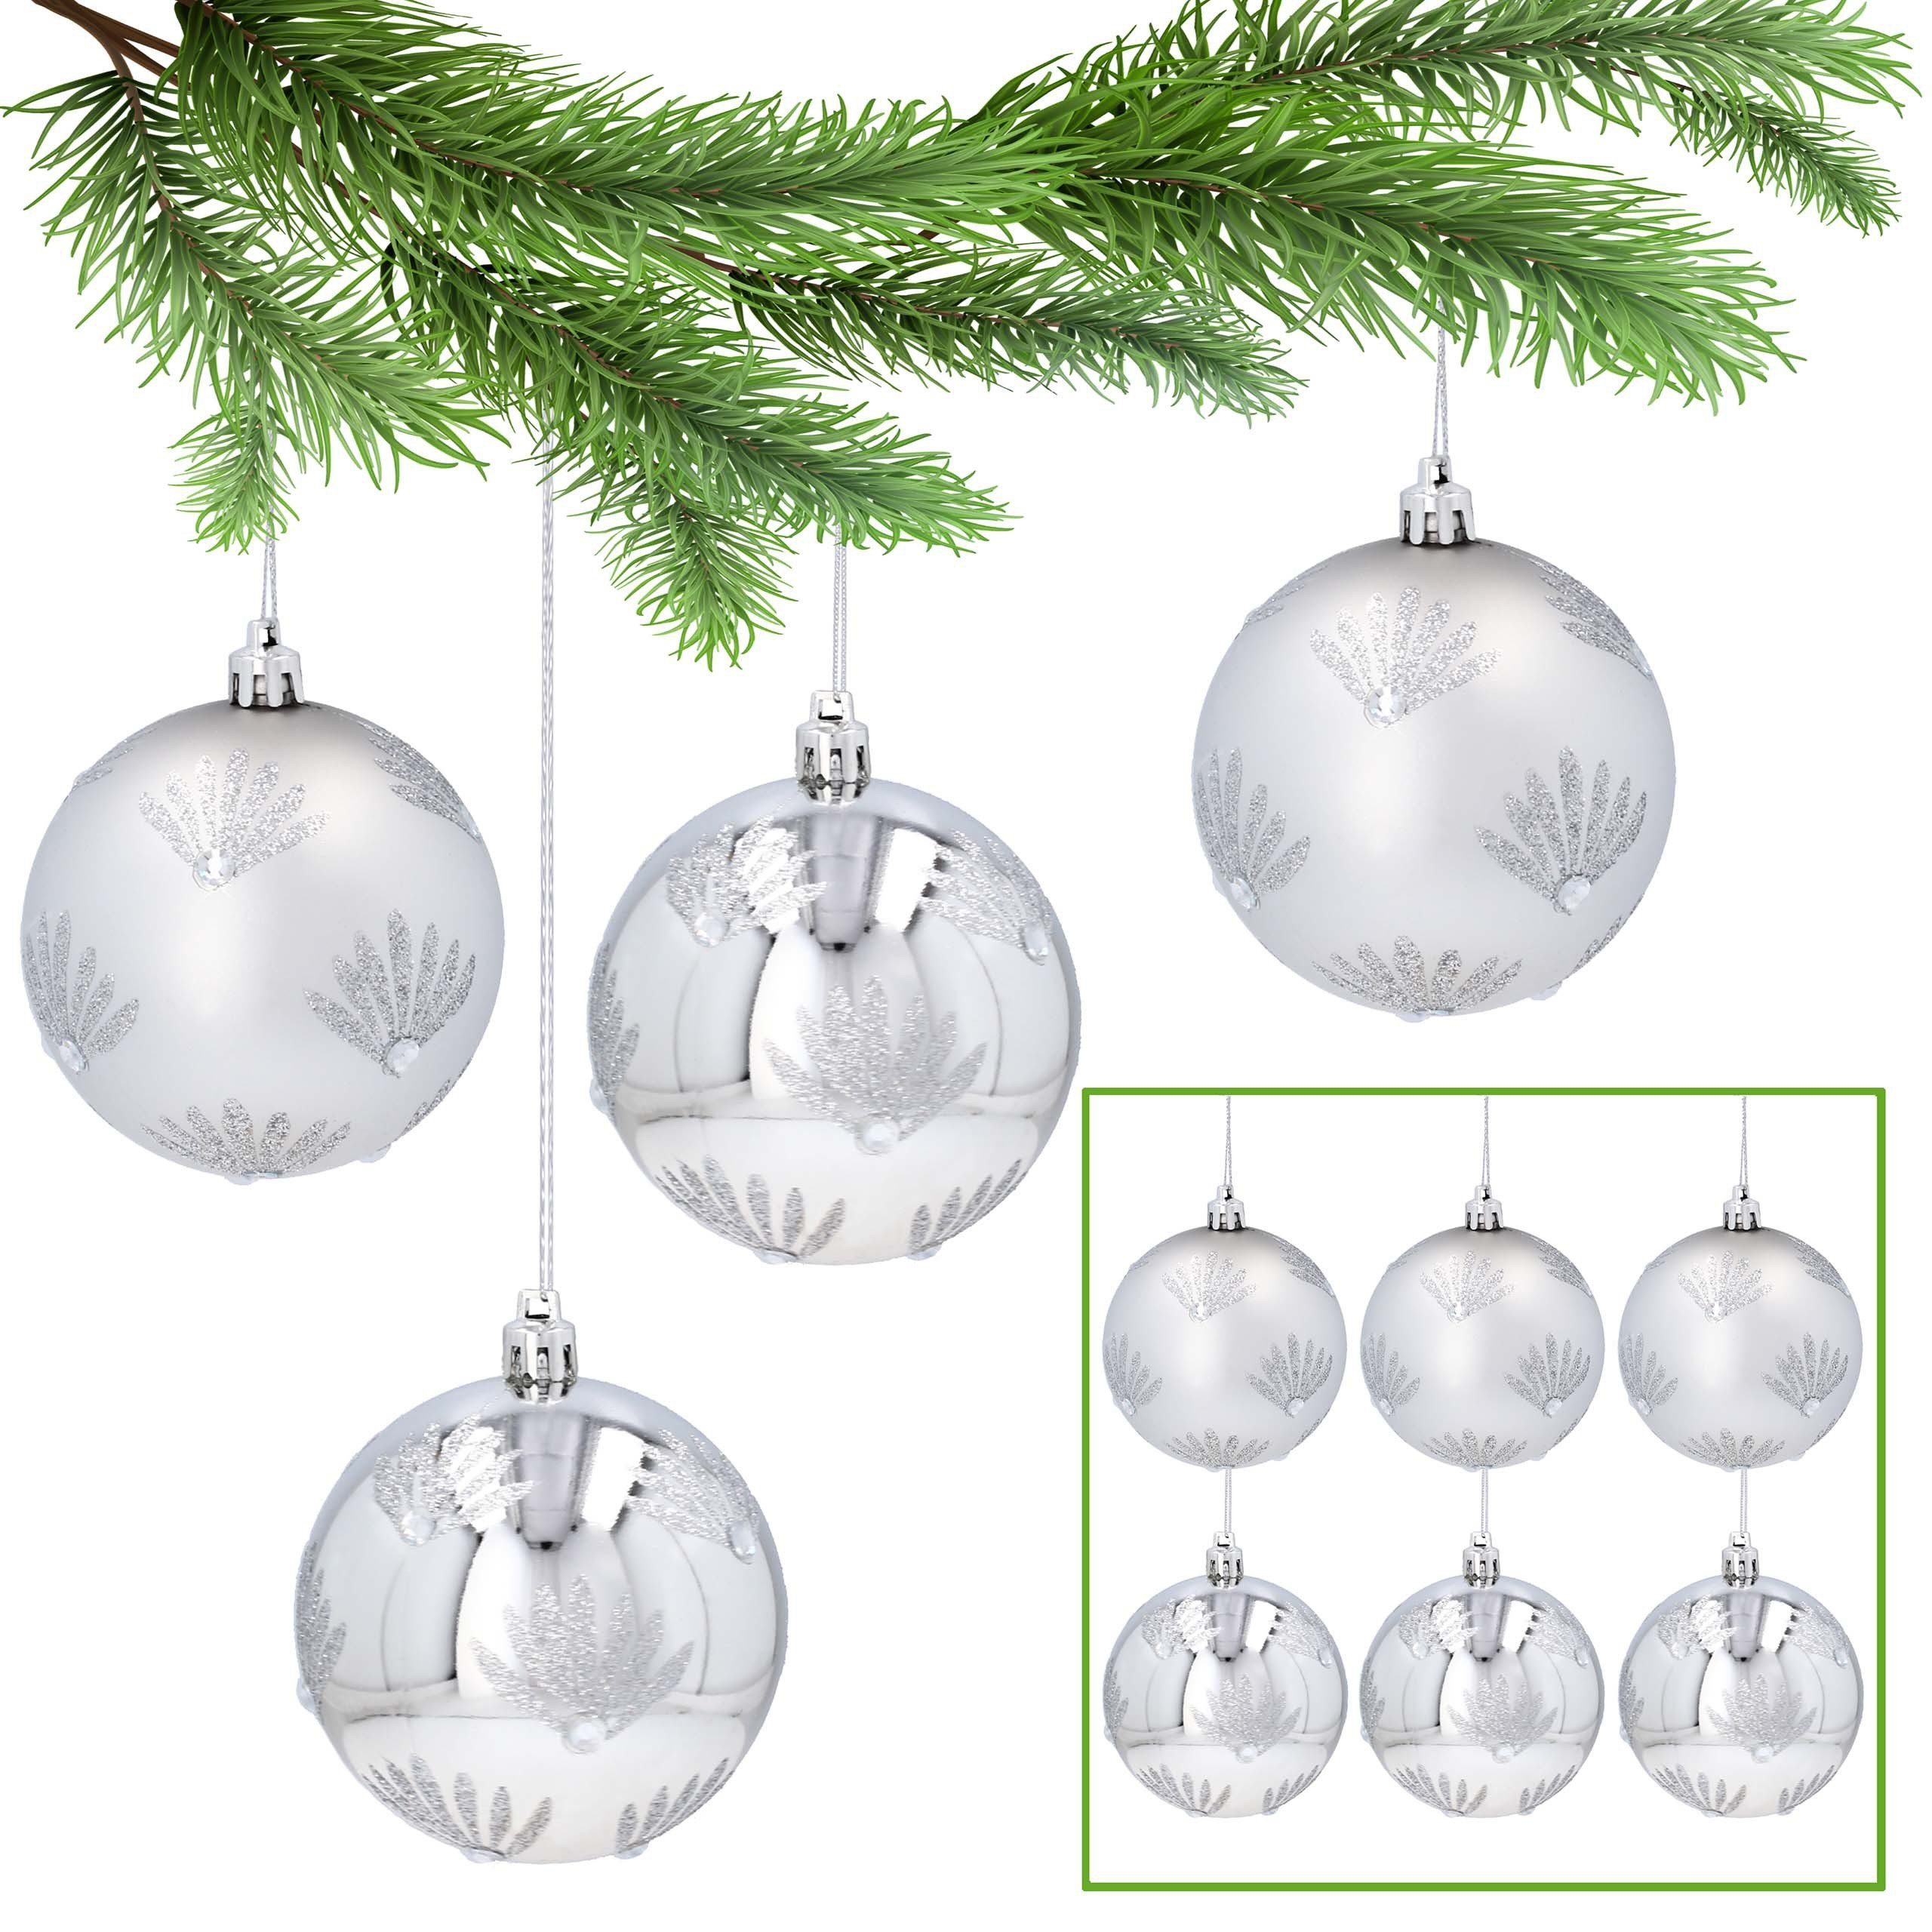 Sarcia.eu Weihnachtsbaumkugel Silberne Christbaumkugeln mit Glitzer, Kunststoff 8cm, 6 Stück 1Pack | Weihnachtskugeln